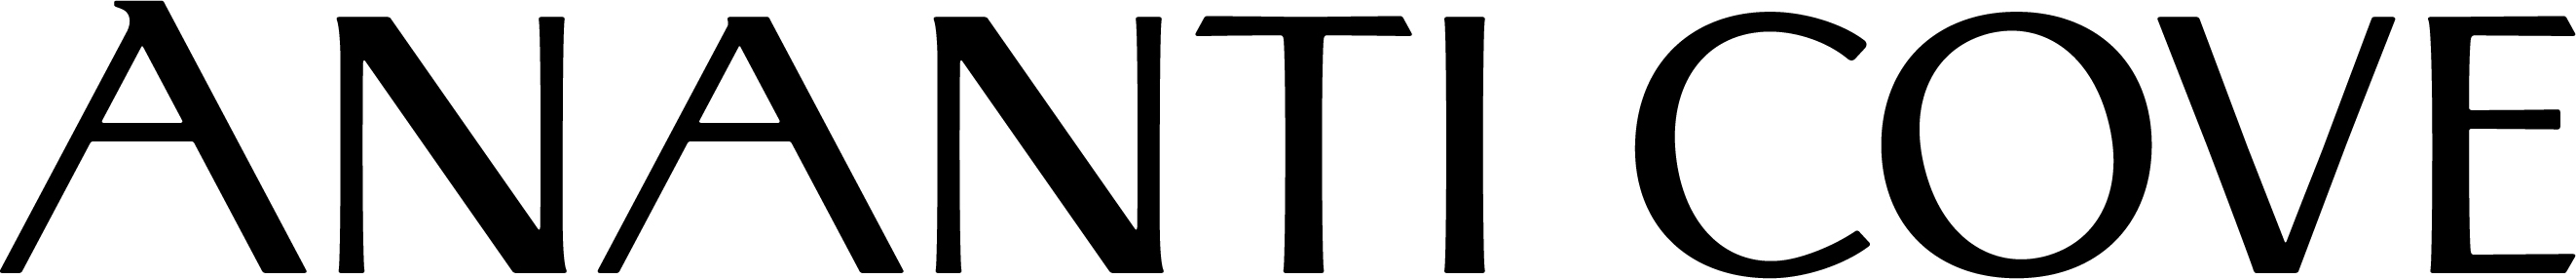 아난티의 계열사 (주)아난티코브의 로고